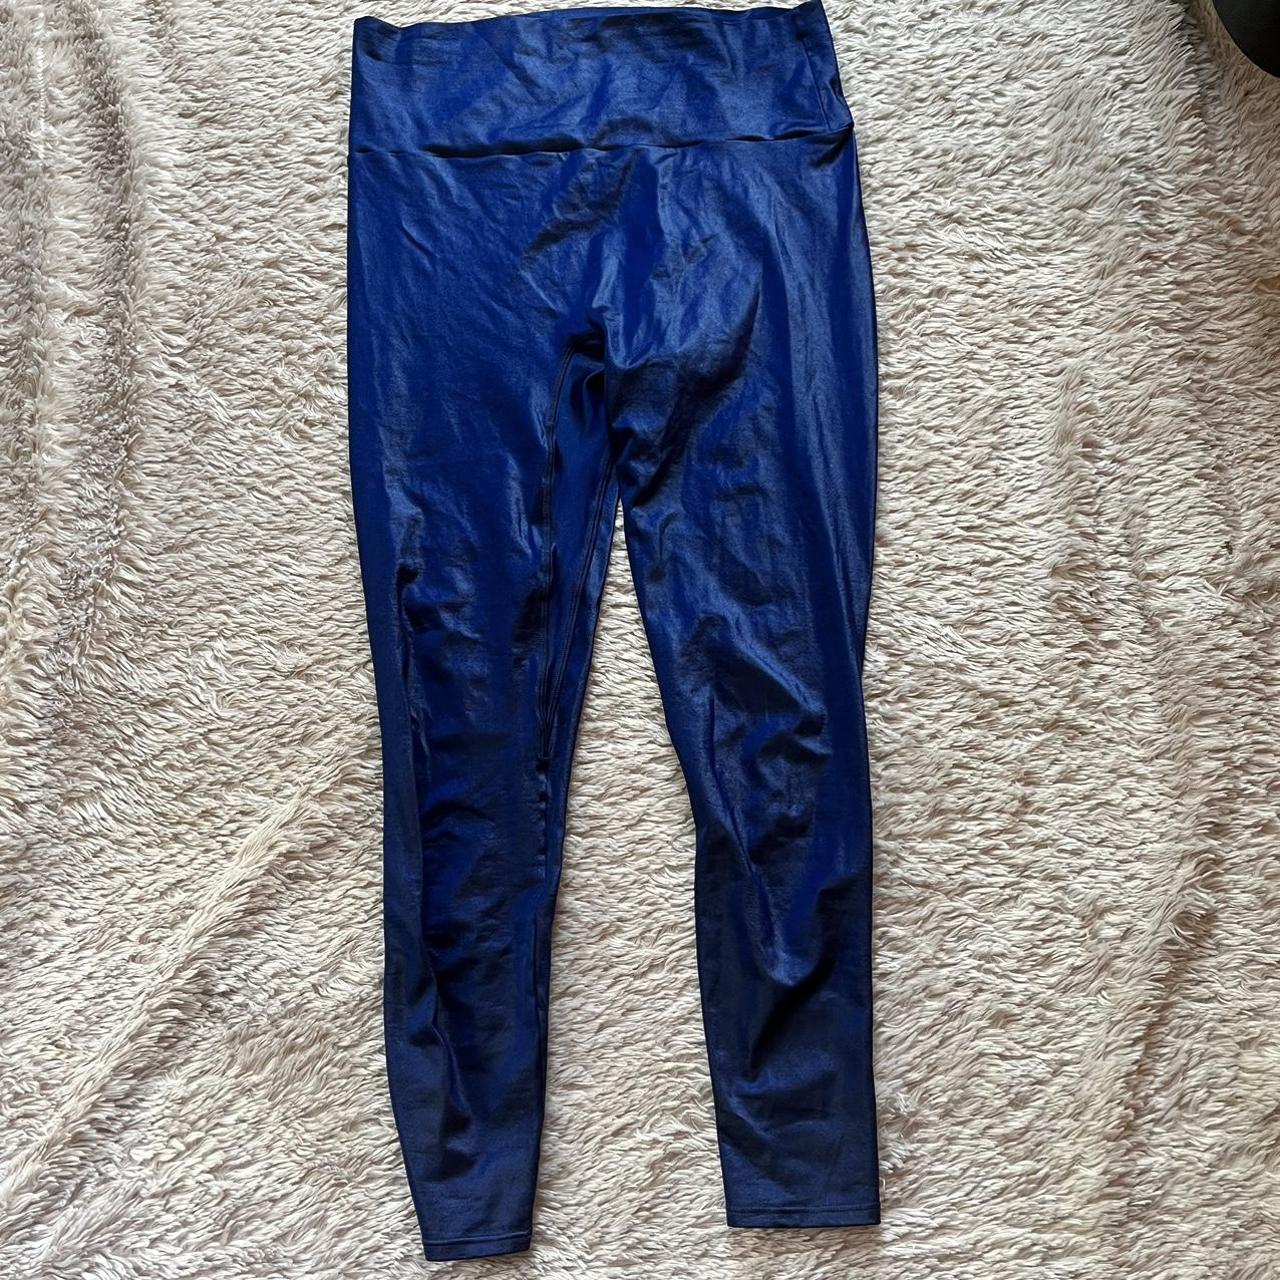 K-Deer blue shiny wet look leggings, Discontinued